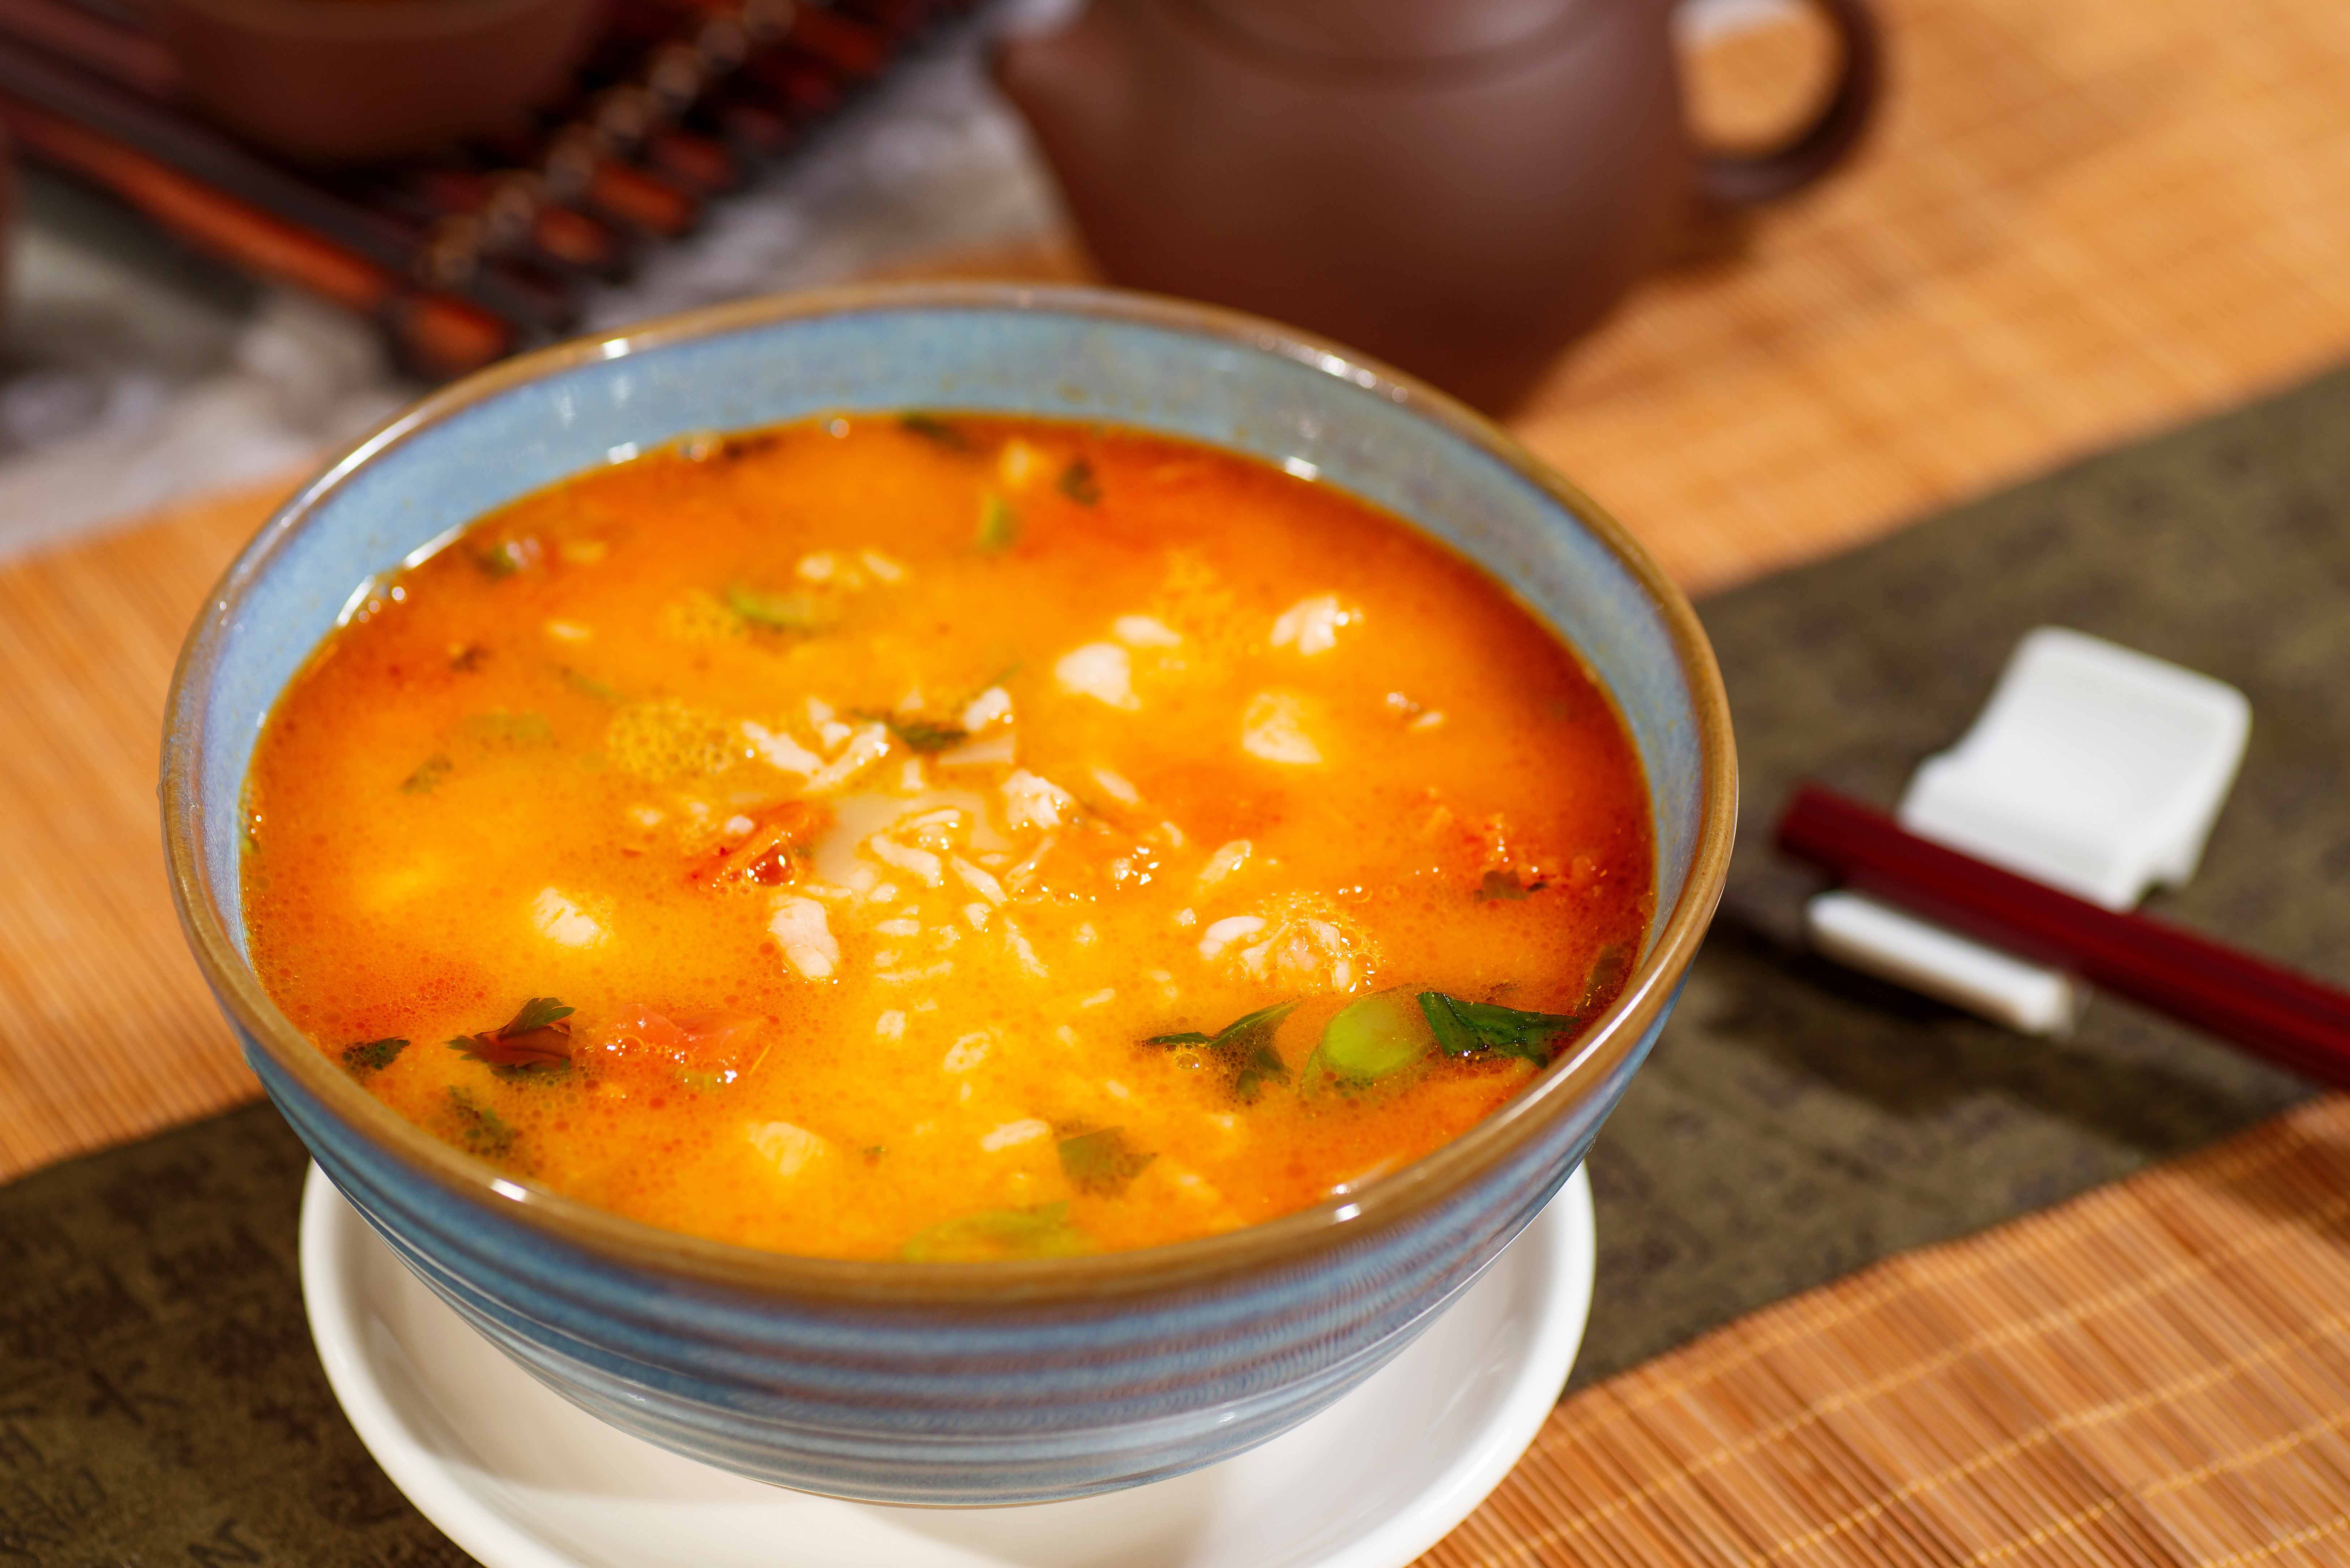 任食放題 鮮茄龍蝦湯粒粒泡飯茄味、鮮味並重，脆米保持香脆，添口感。